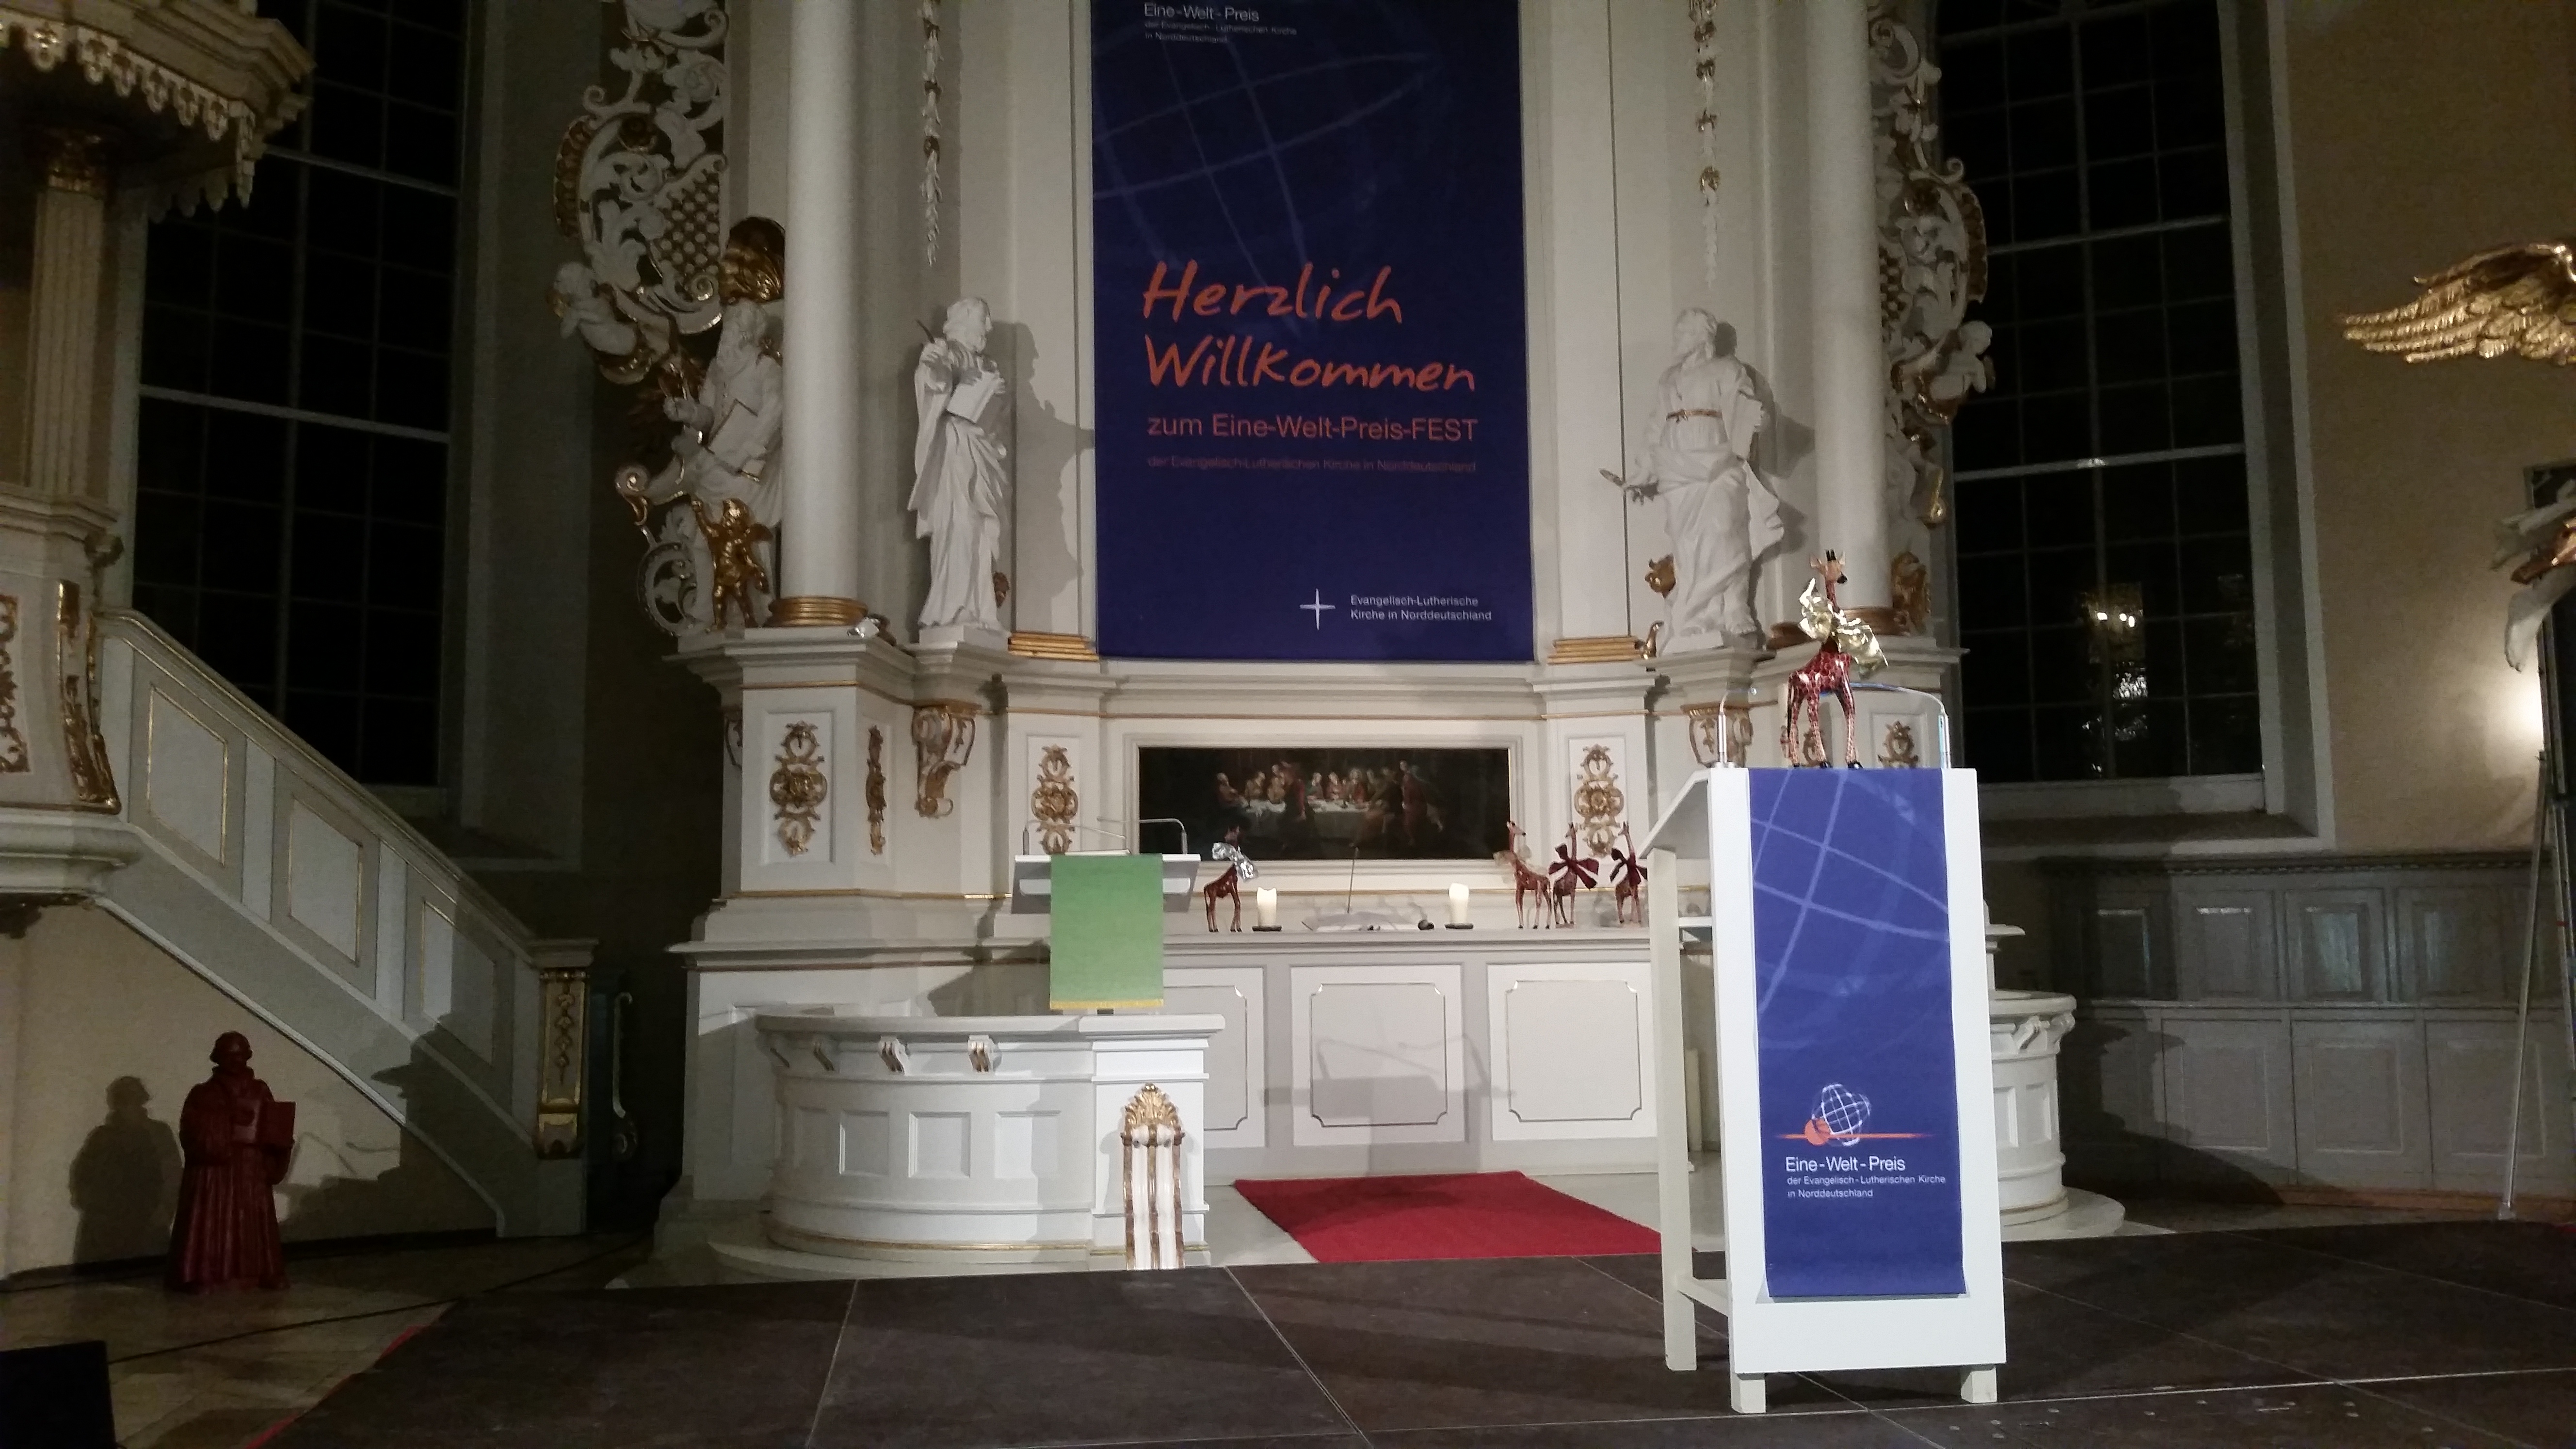 Eine-Welt-Preis-FEST in der Christianskirche in Hamburg Ottensen